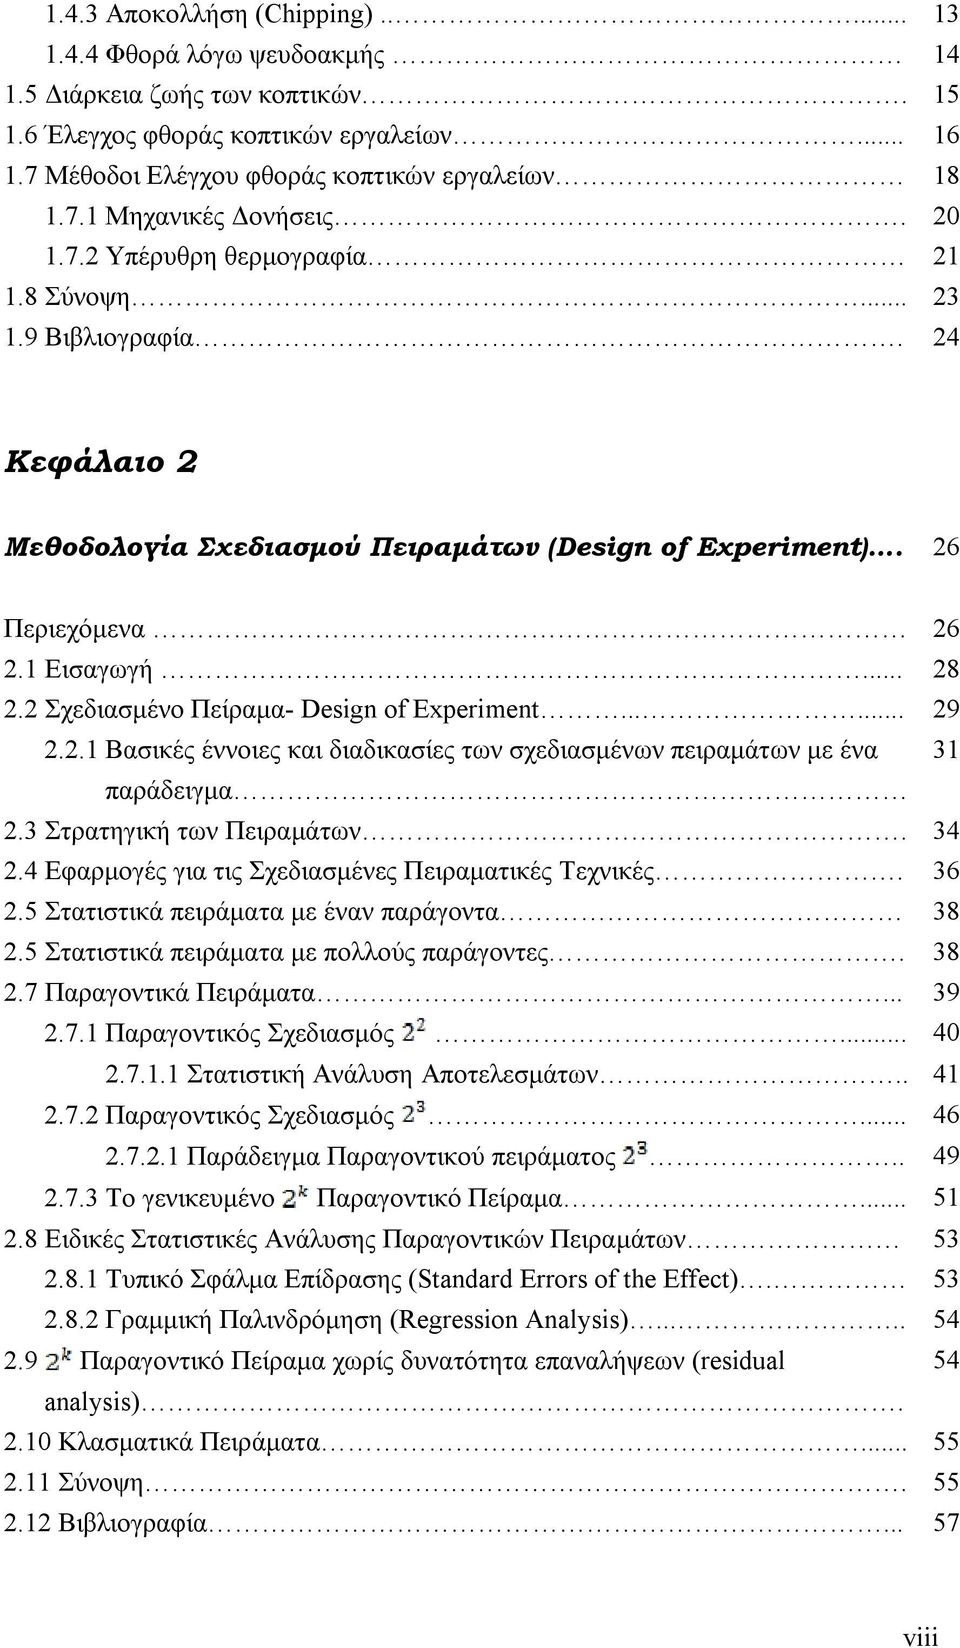 2 Σχεδιασμένο Πείραμα- Design of Experiment...... 29 2.2.1 Βασικές έννοιες και διαδικασίες των σχεδιασμένων πειραμάτων με ένα 31 παράδειγμα 2.3 Στρατηγική των Πειραμάτων. 34 2.